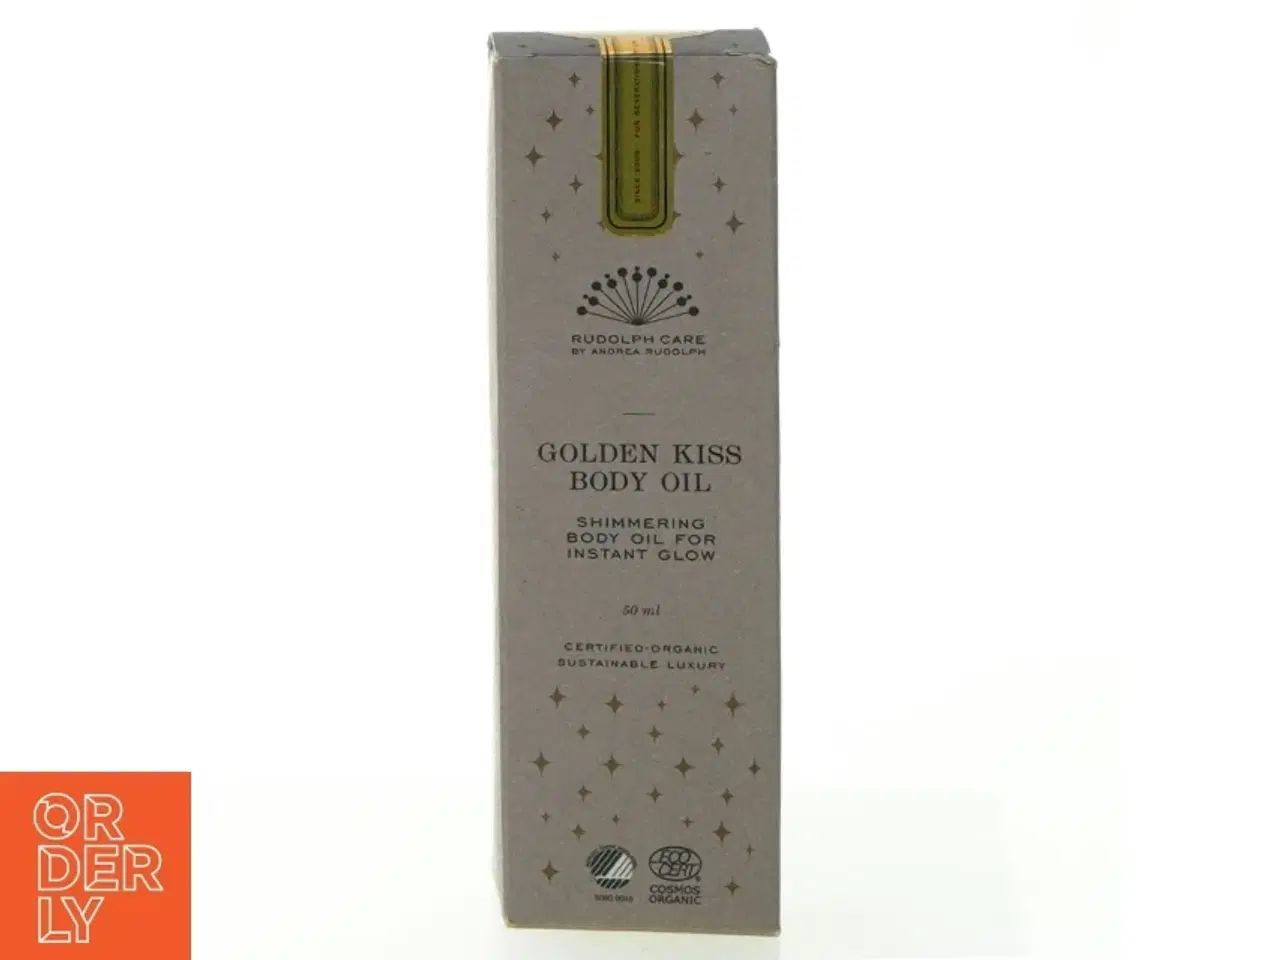 Billede 1 - Golden kiss body oil fra Rudolph Care (str. 14 x 4 cm)